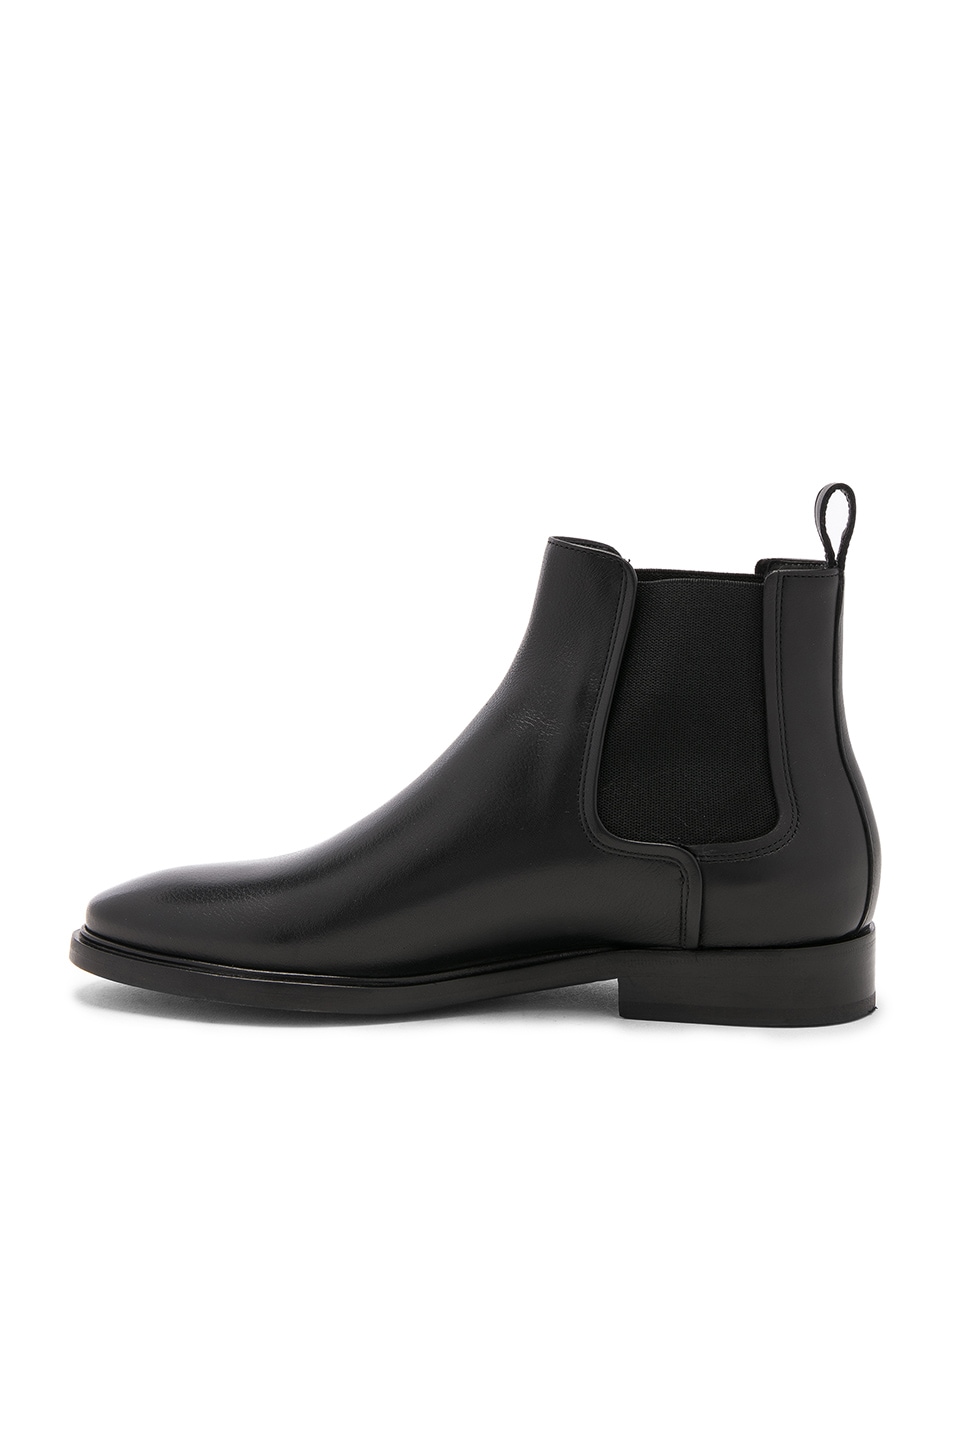 LANVIN Leather Chelsea Boots, Black | ModeSens